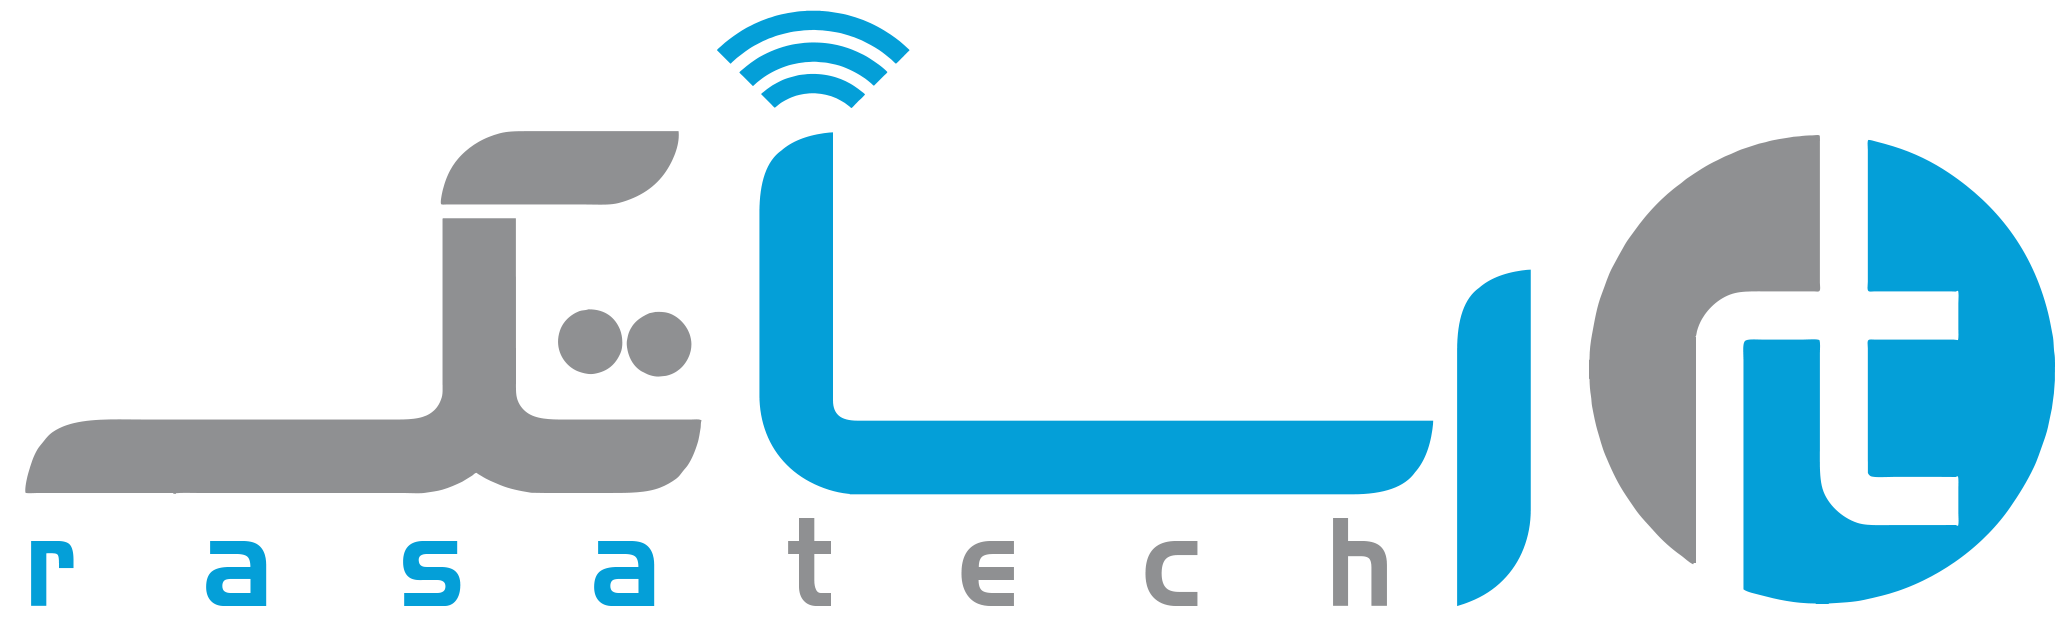 cropped-rasatech-logo.png